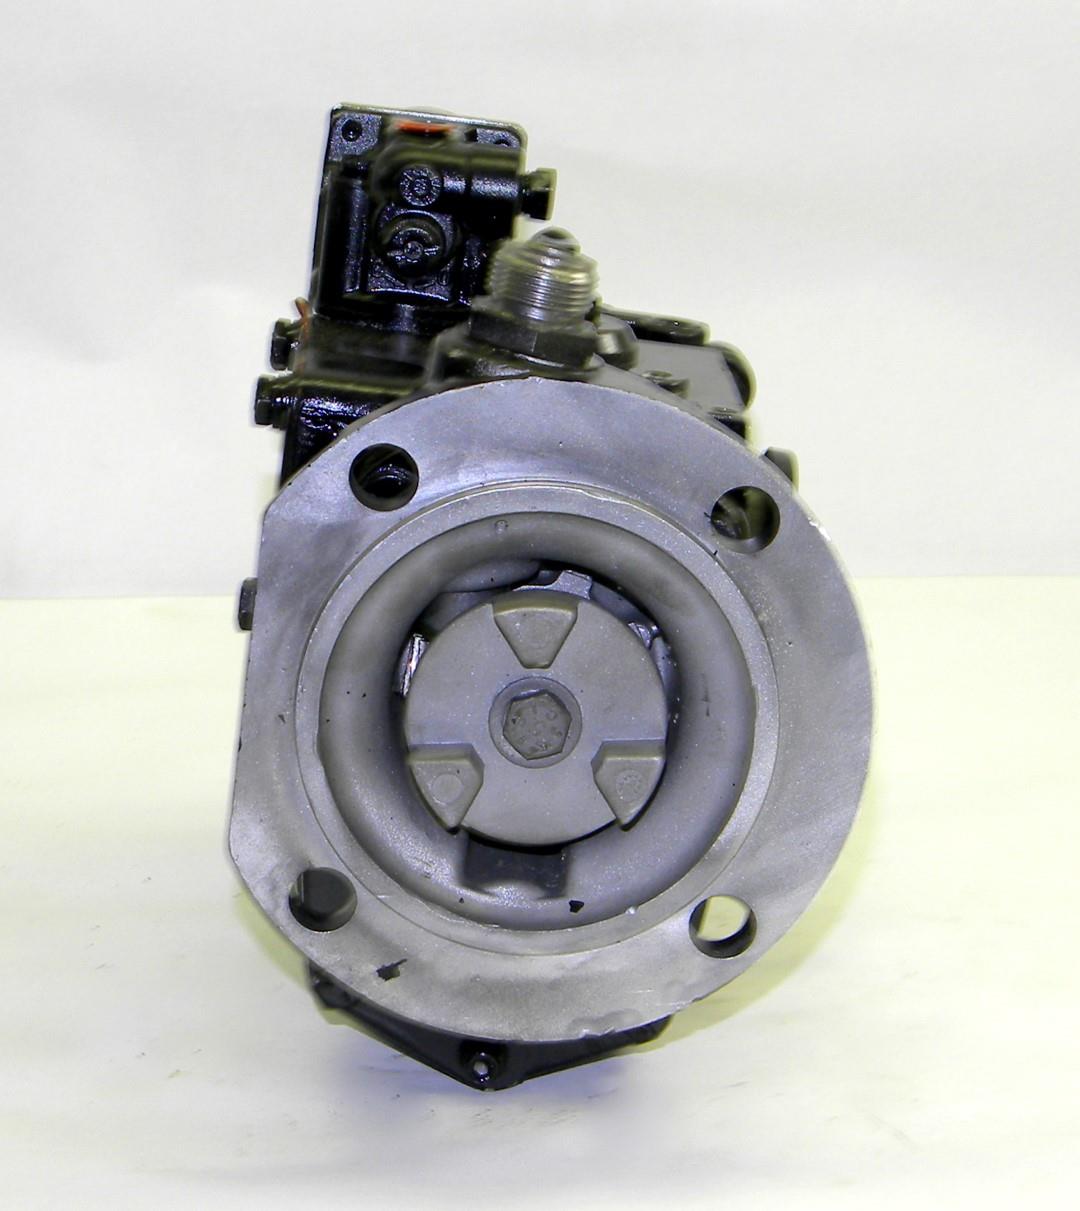 SP-1736 | Cummins Fuel Injection Pump for V903 Cummins Engine PN 3062520 Rebuilt (5).JPG